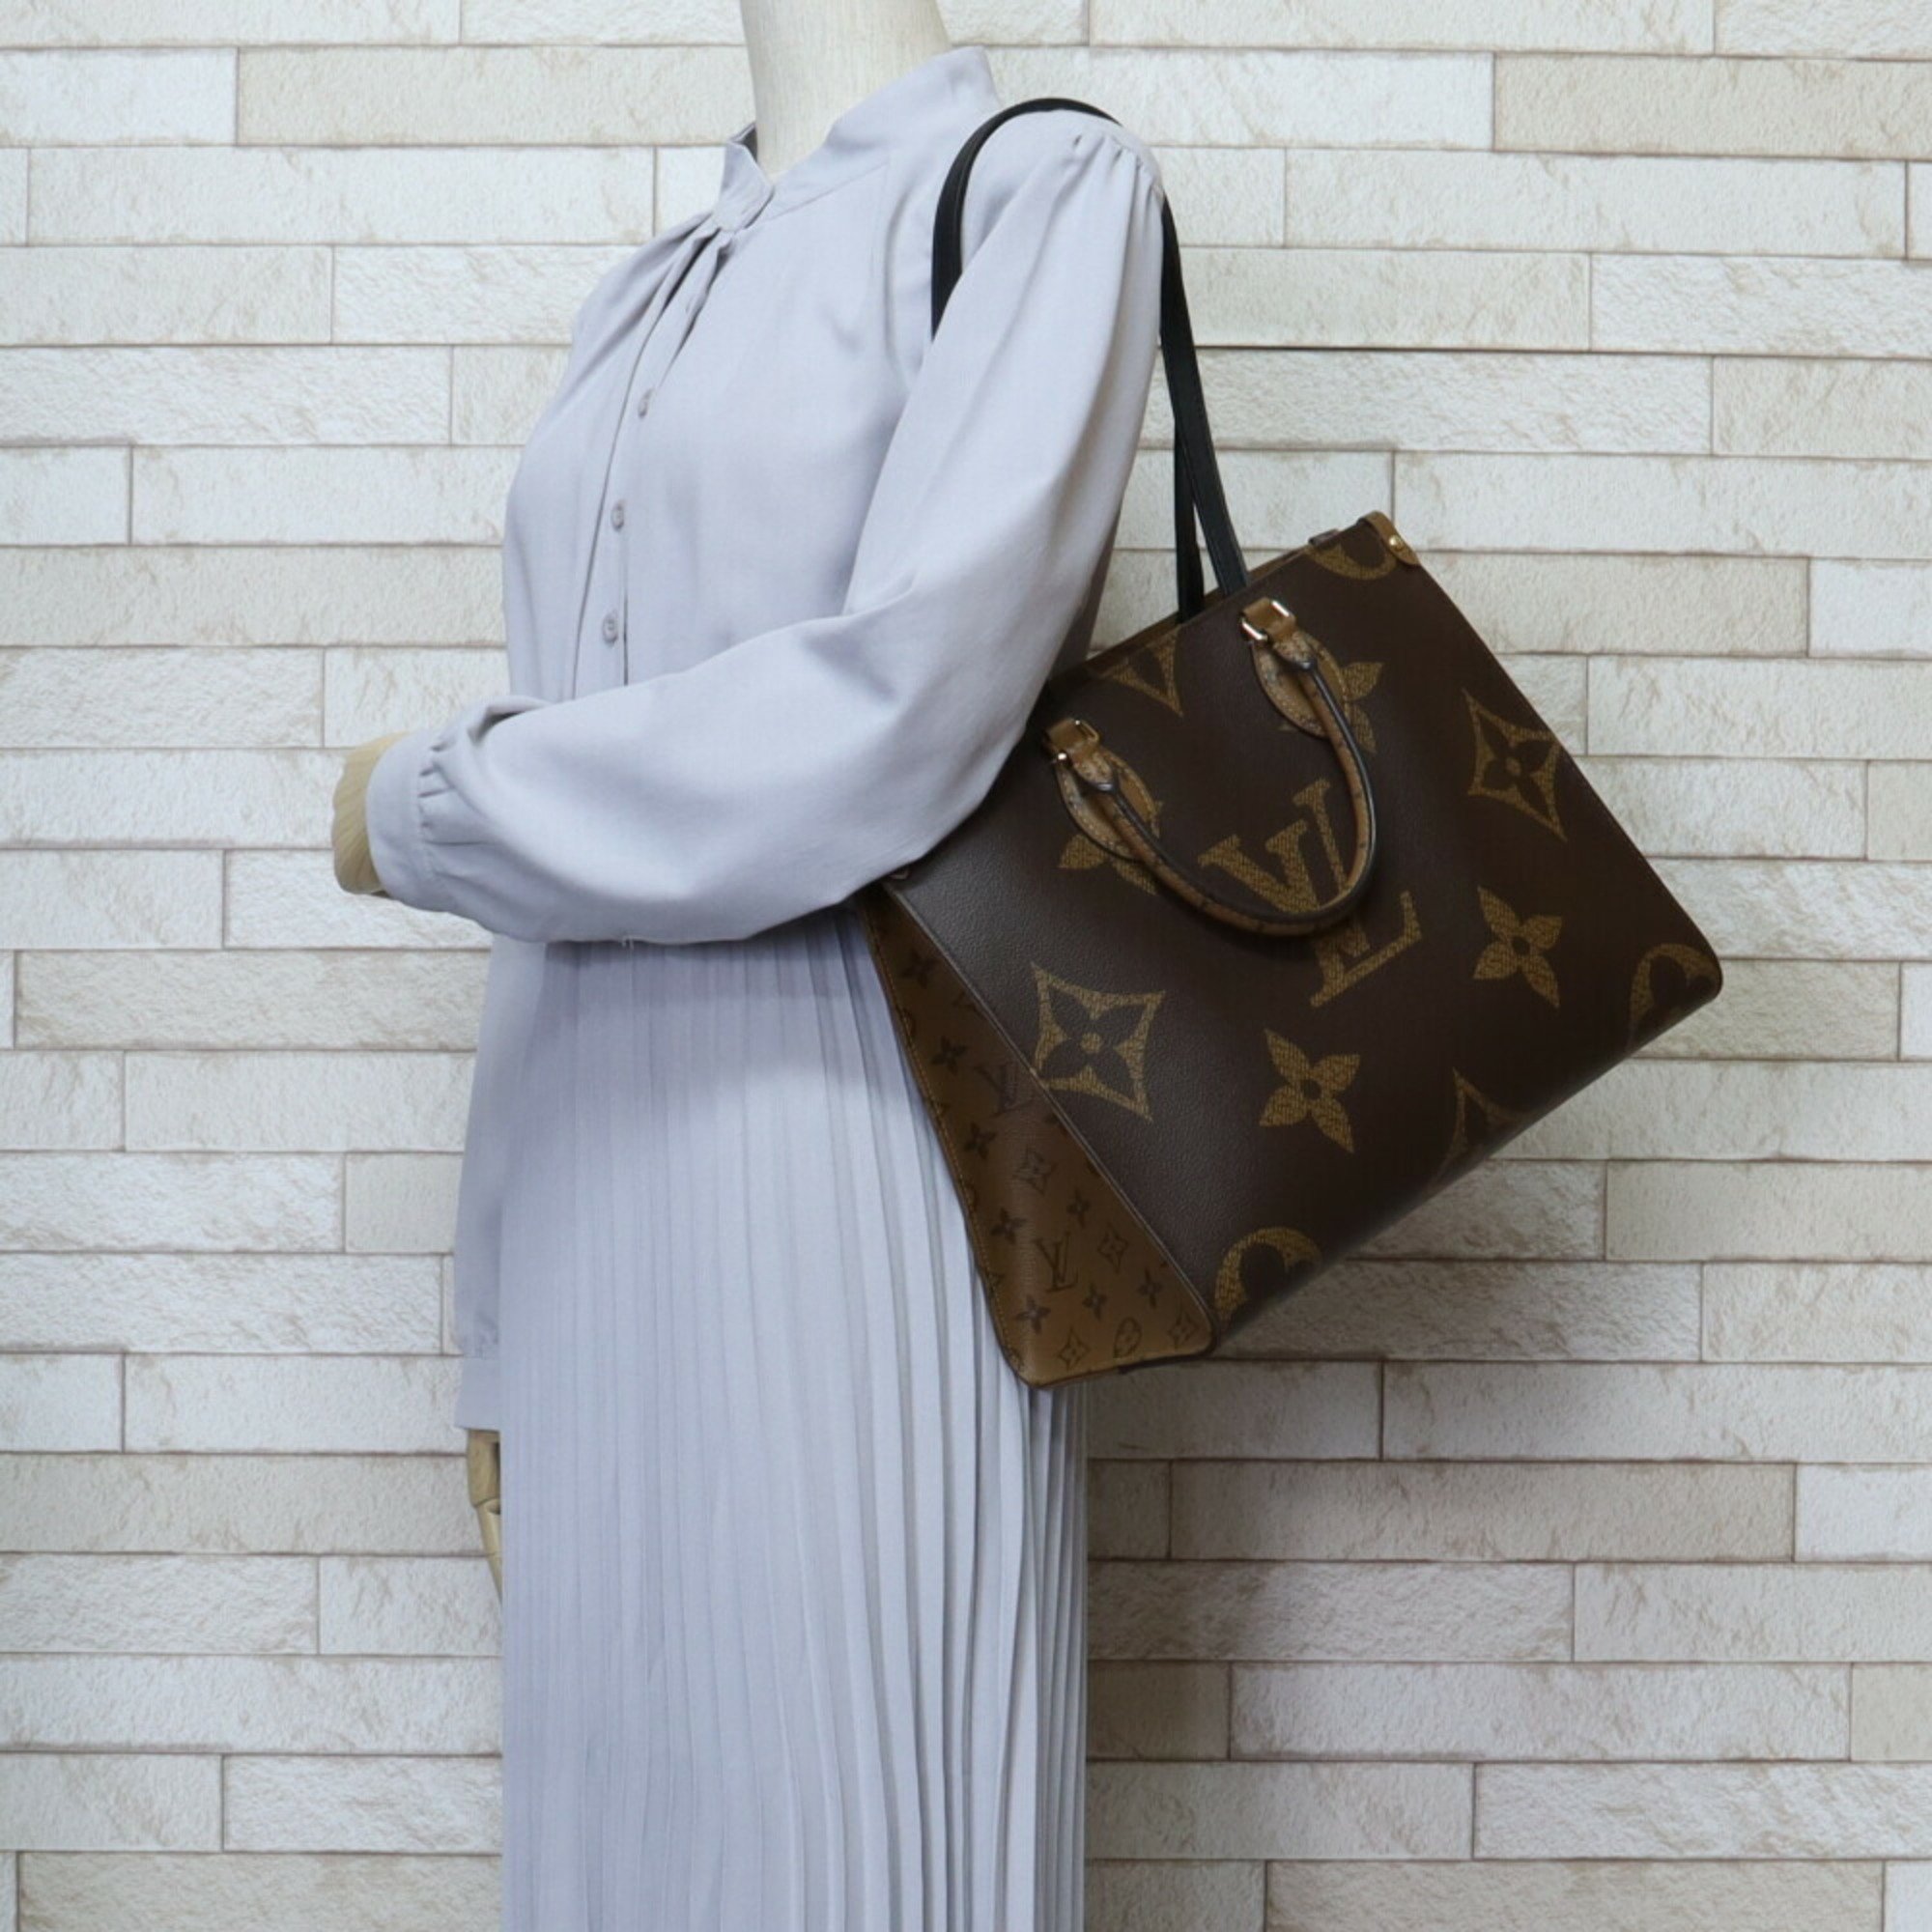 Louis Vuitton On the Go MM Monogram Giant Shoulder Bag Reverse M45321 Brown Unisex LOUIS VUITTON